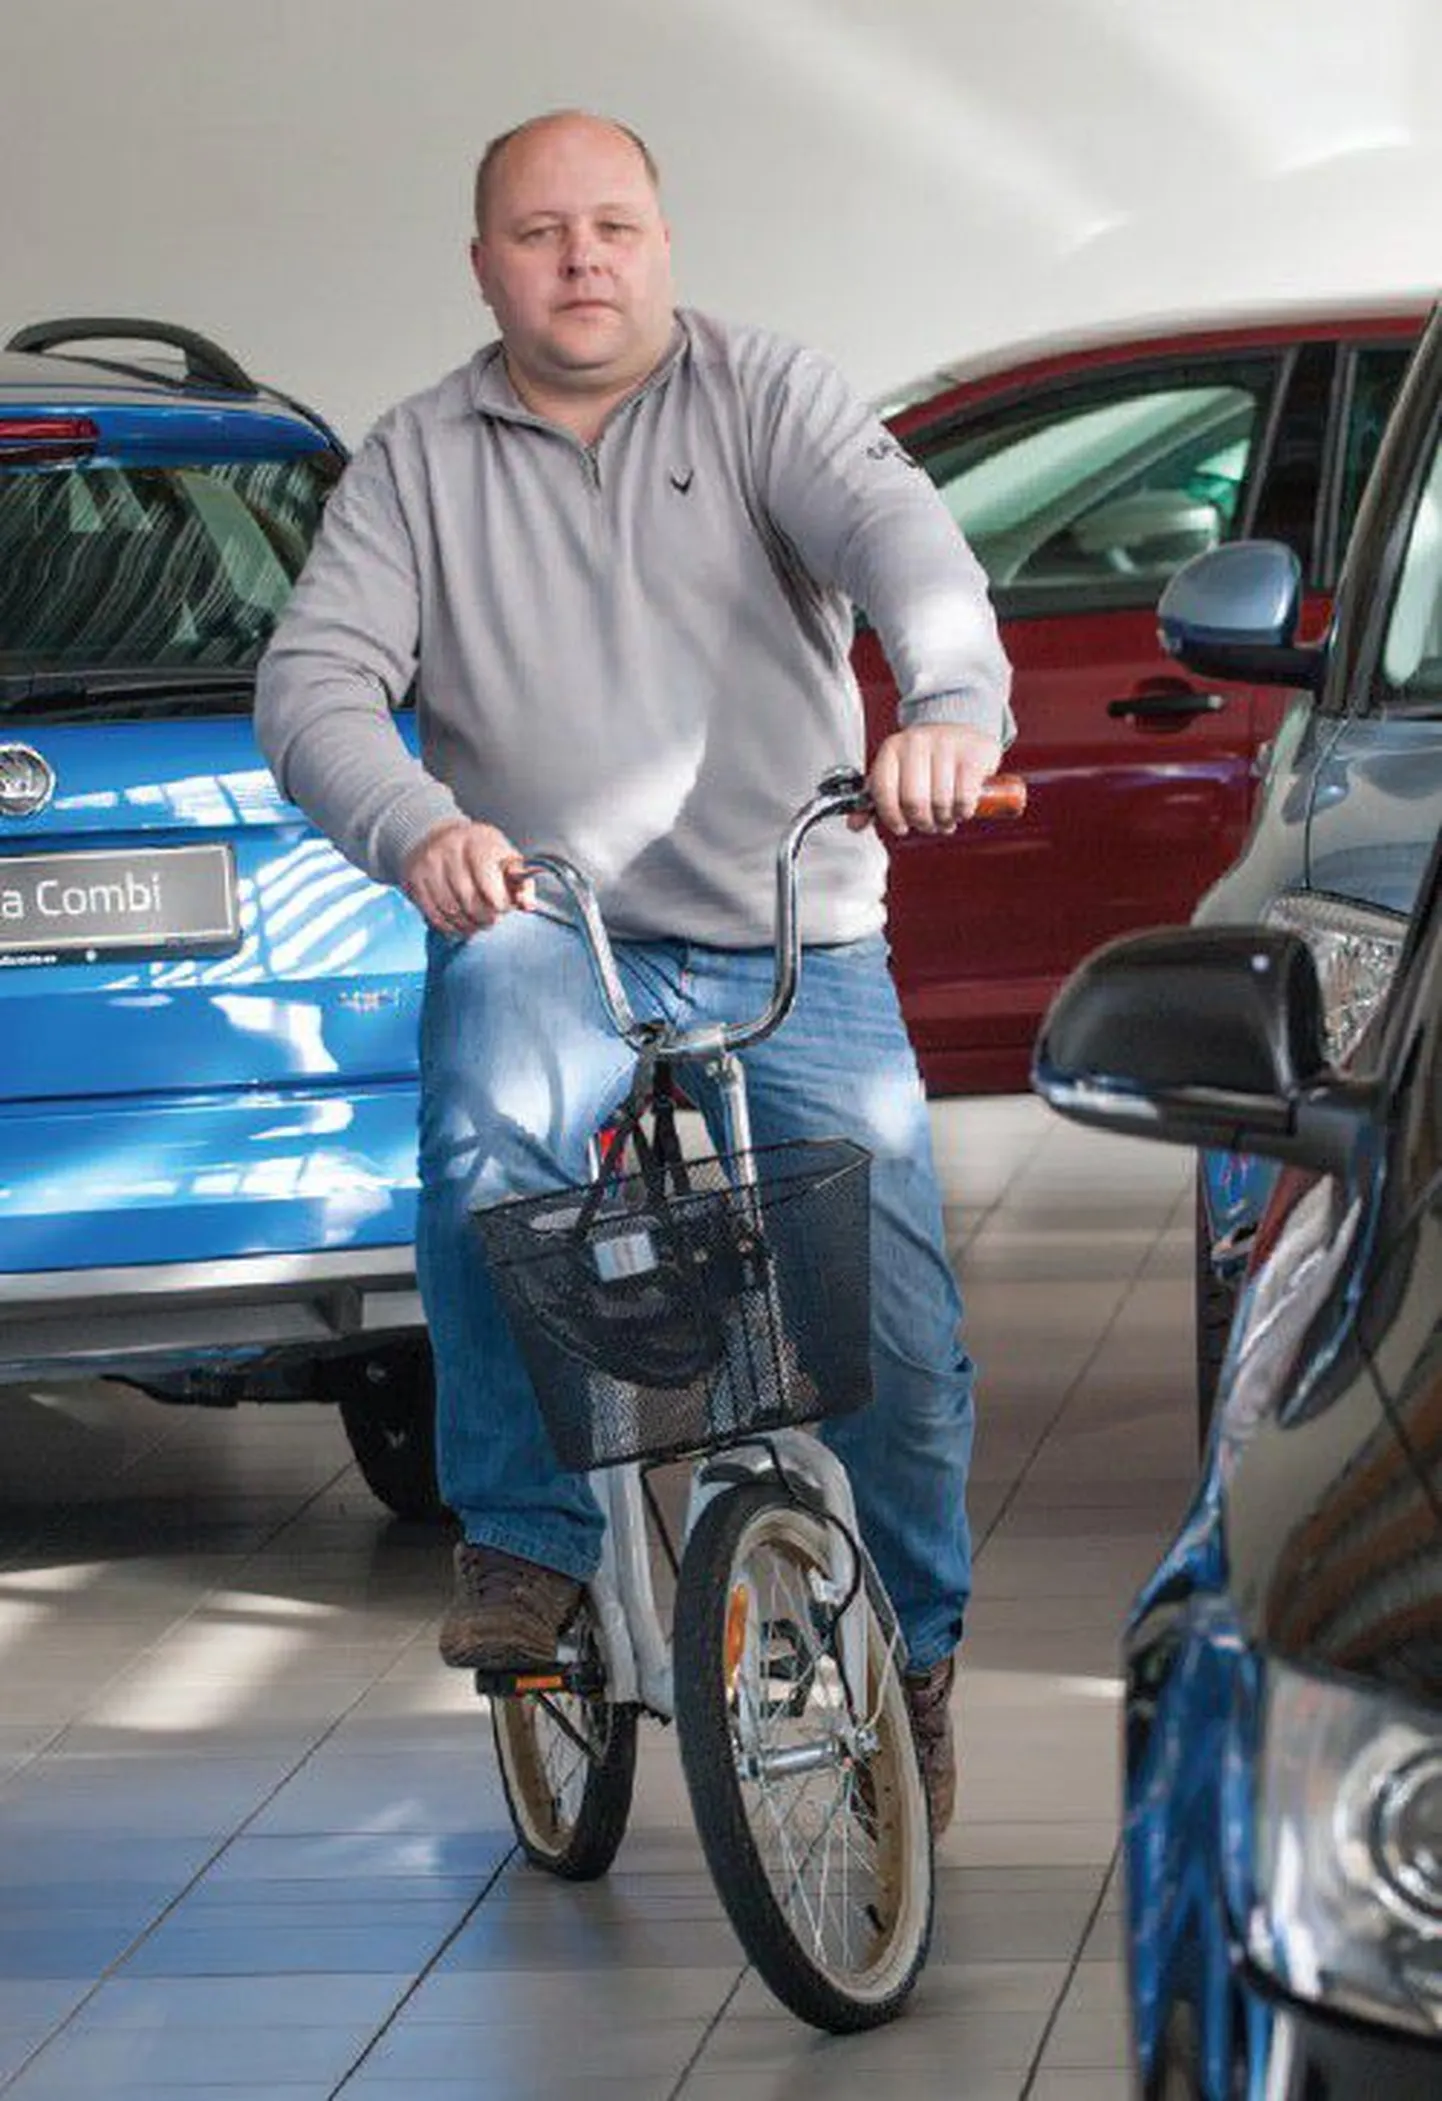 Møller Auto pakub teeninduse ajaks klientidele tasuta jalgratast, rääkis Viljandi esinduse meister Aare Anton.